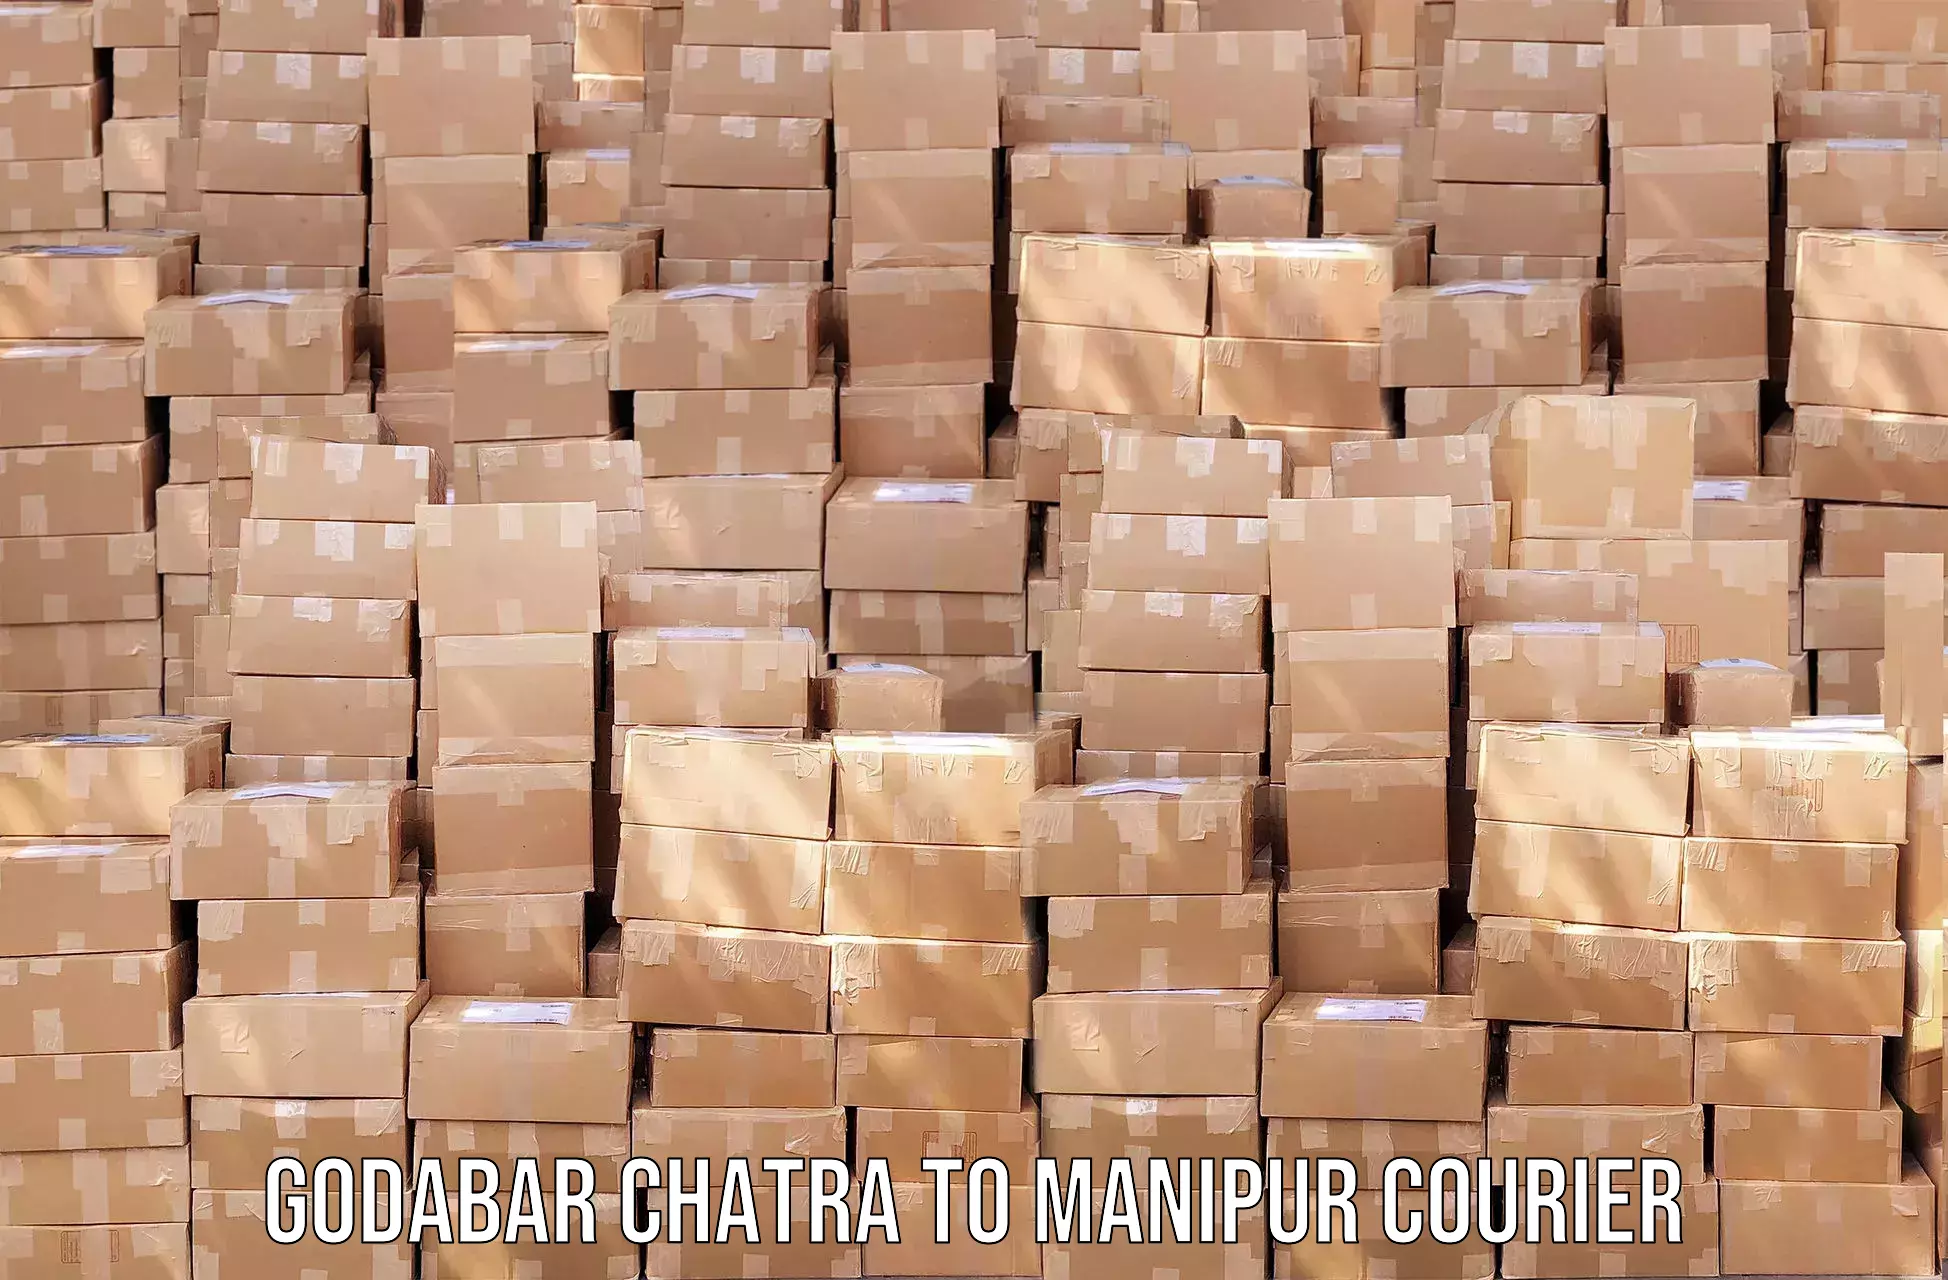 Courier app Godabar Chatra to Tadubi